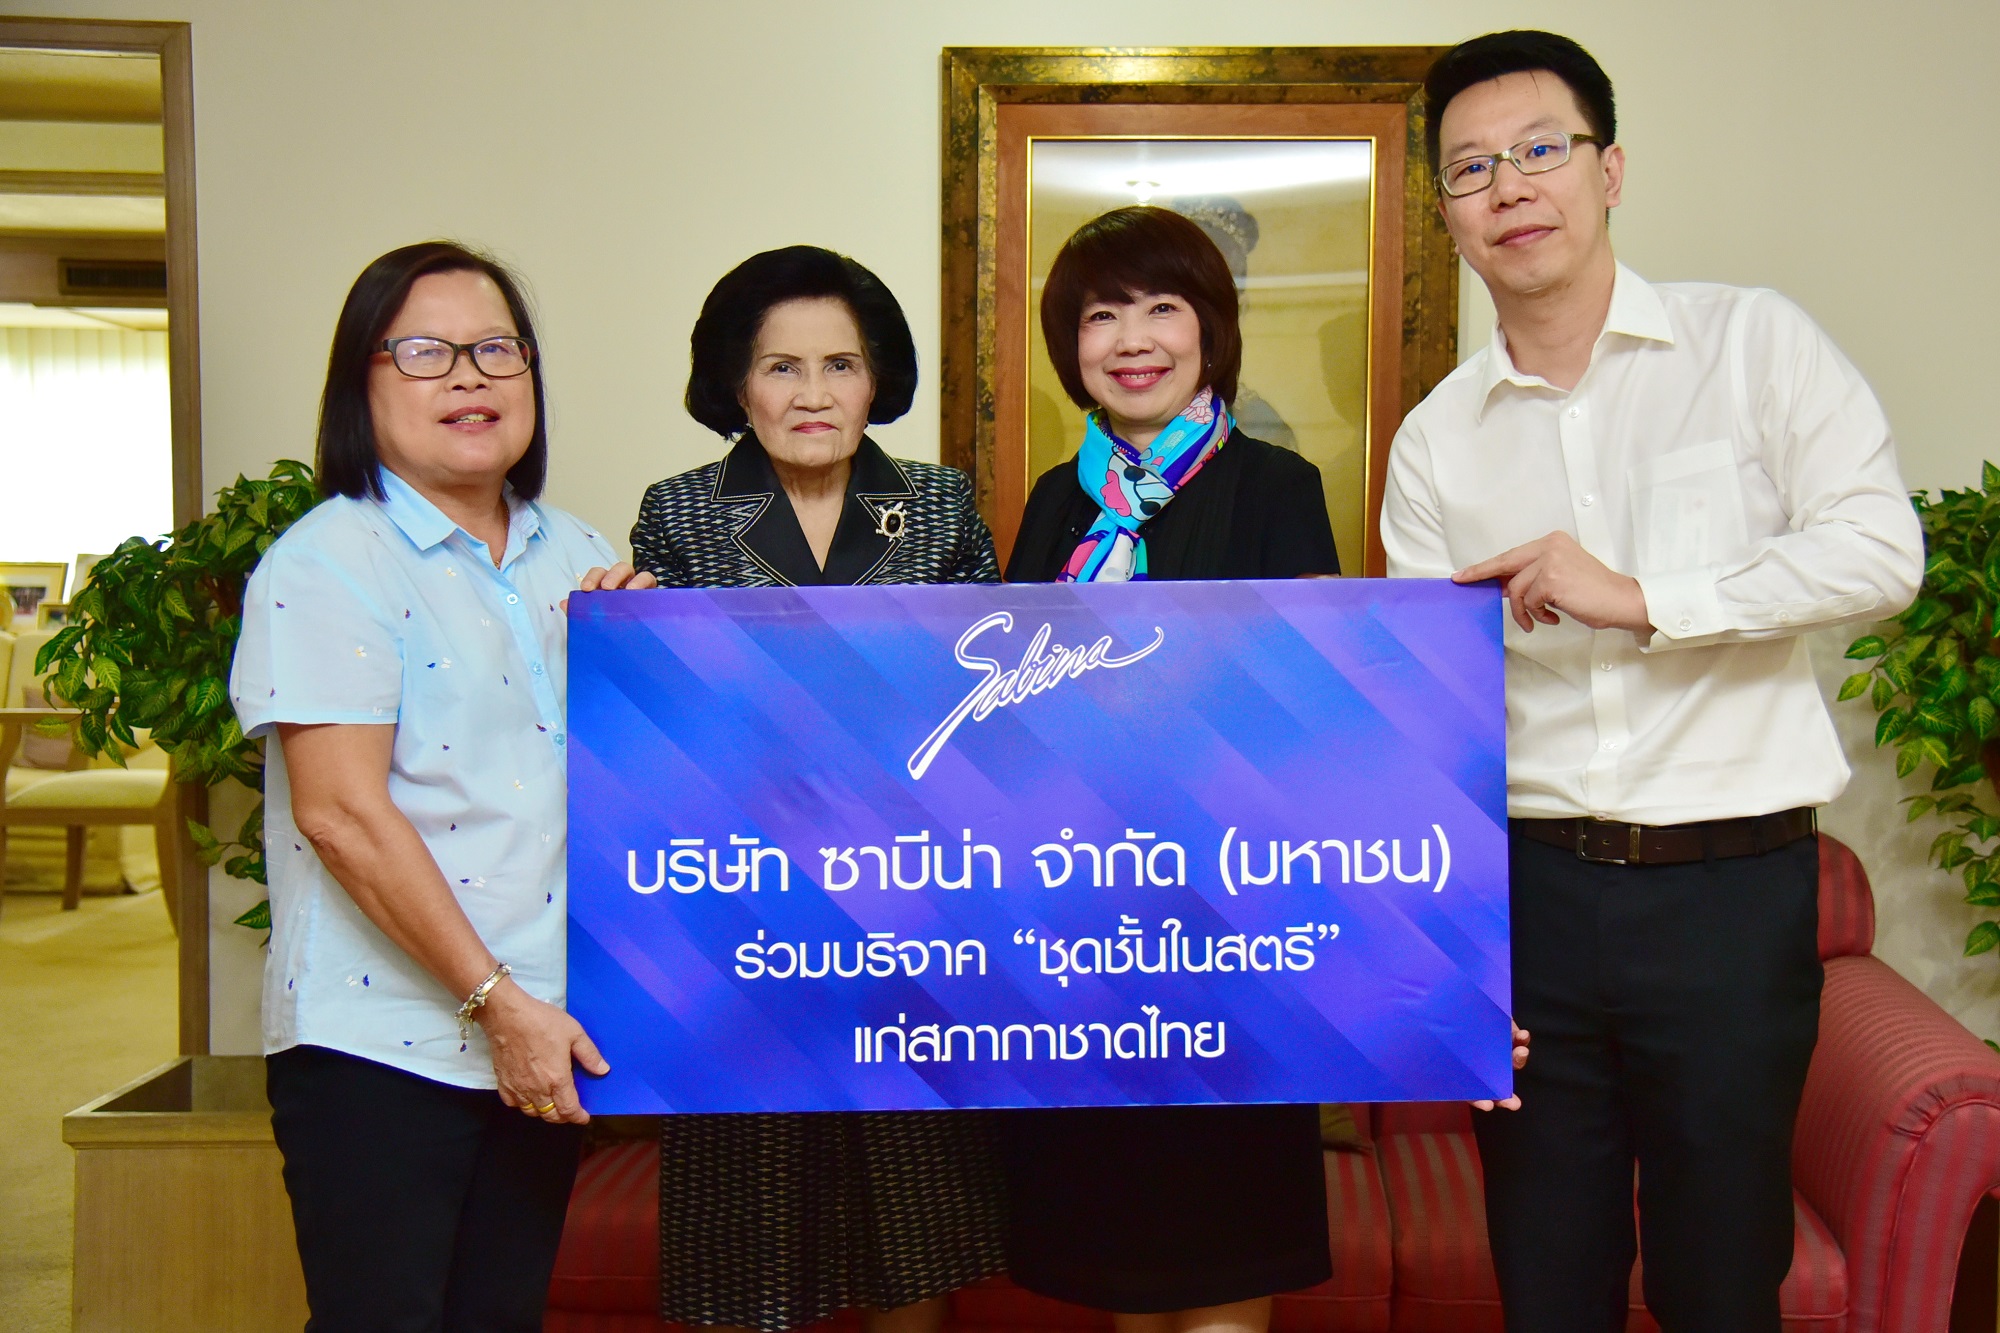 บริษัทซาบีน่า ฟาร์อีสท์ จำกัด บริจาคชุดชั้นในสตรีแก่สภากาชาดไทย ครั้งที่ 3/ปี 2562(20.12.19)